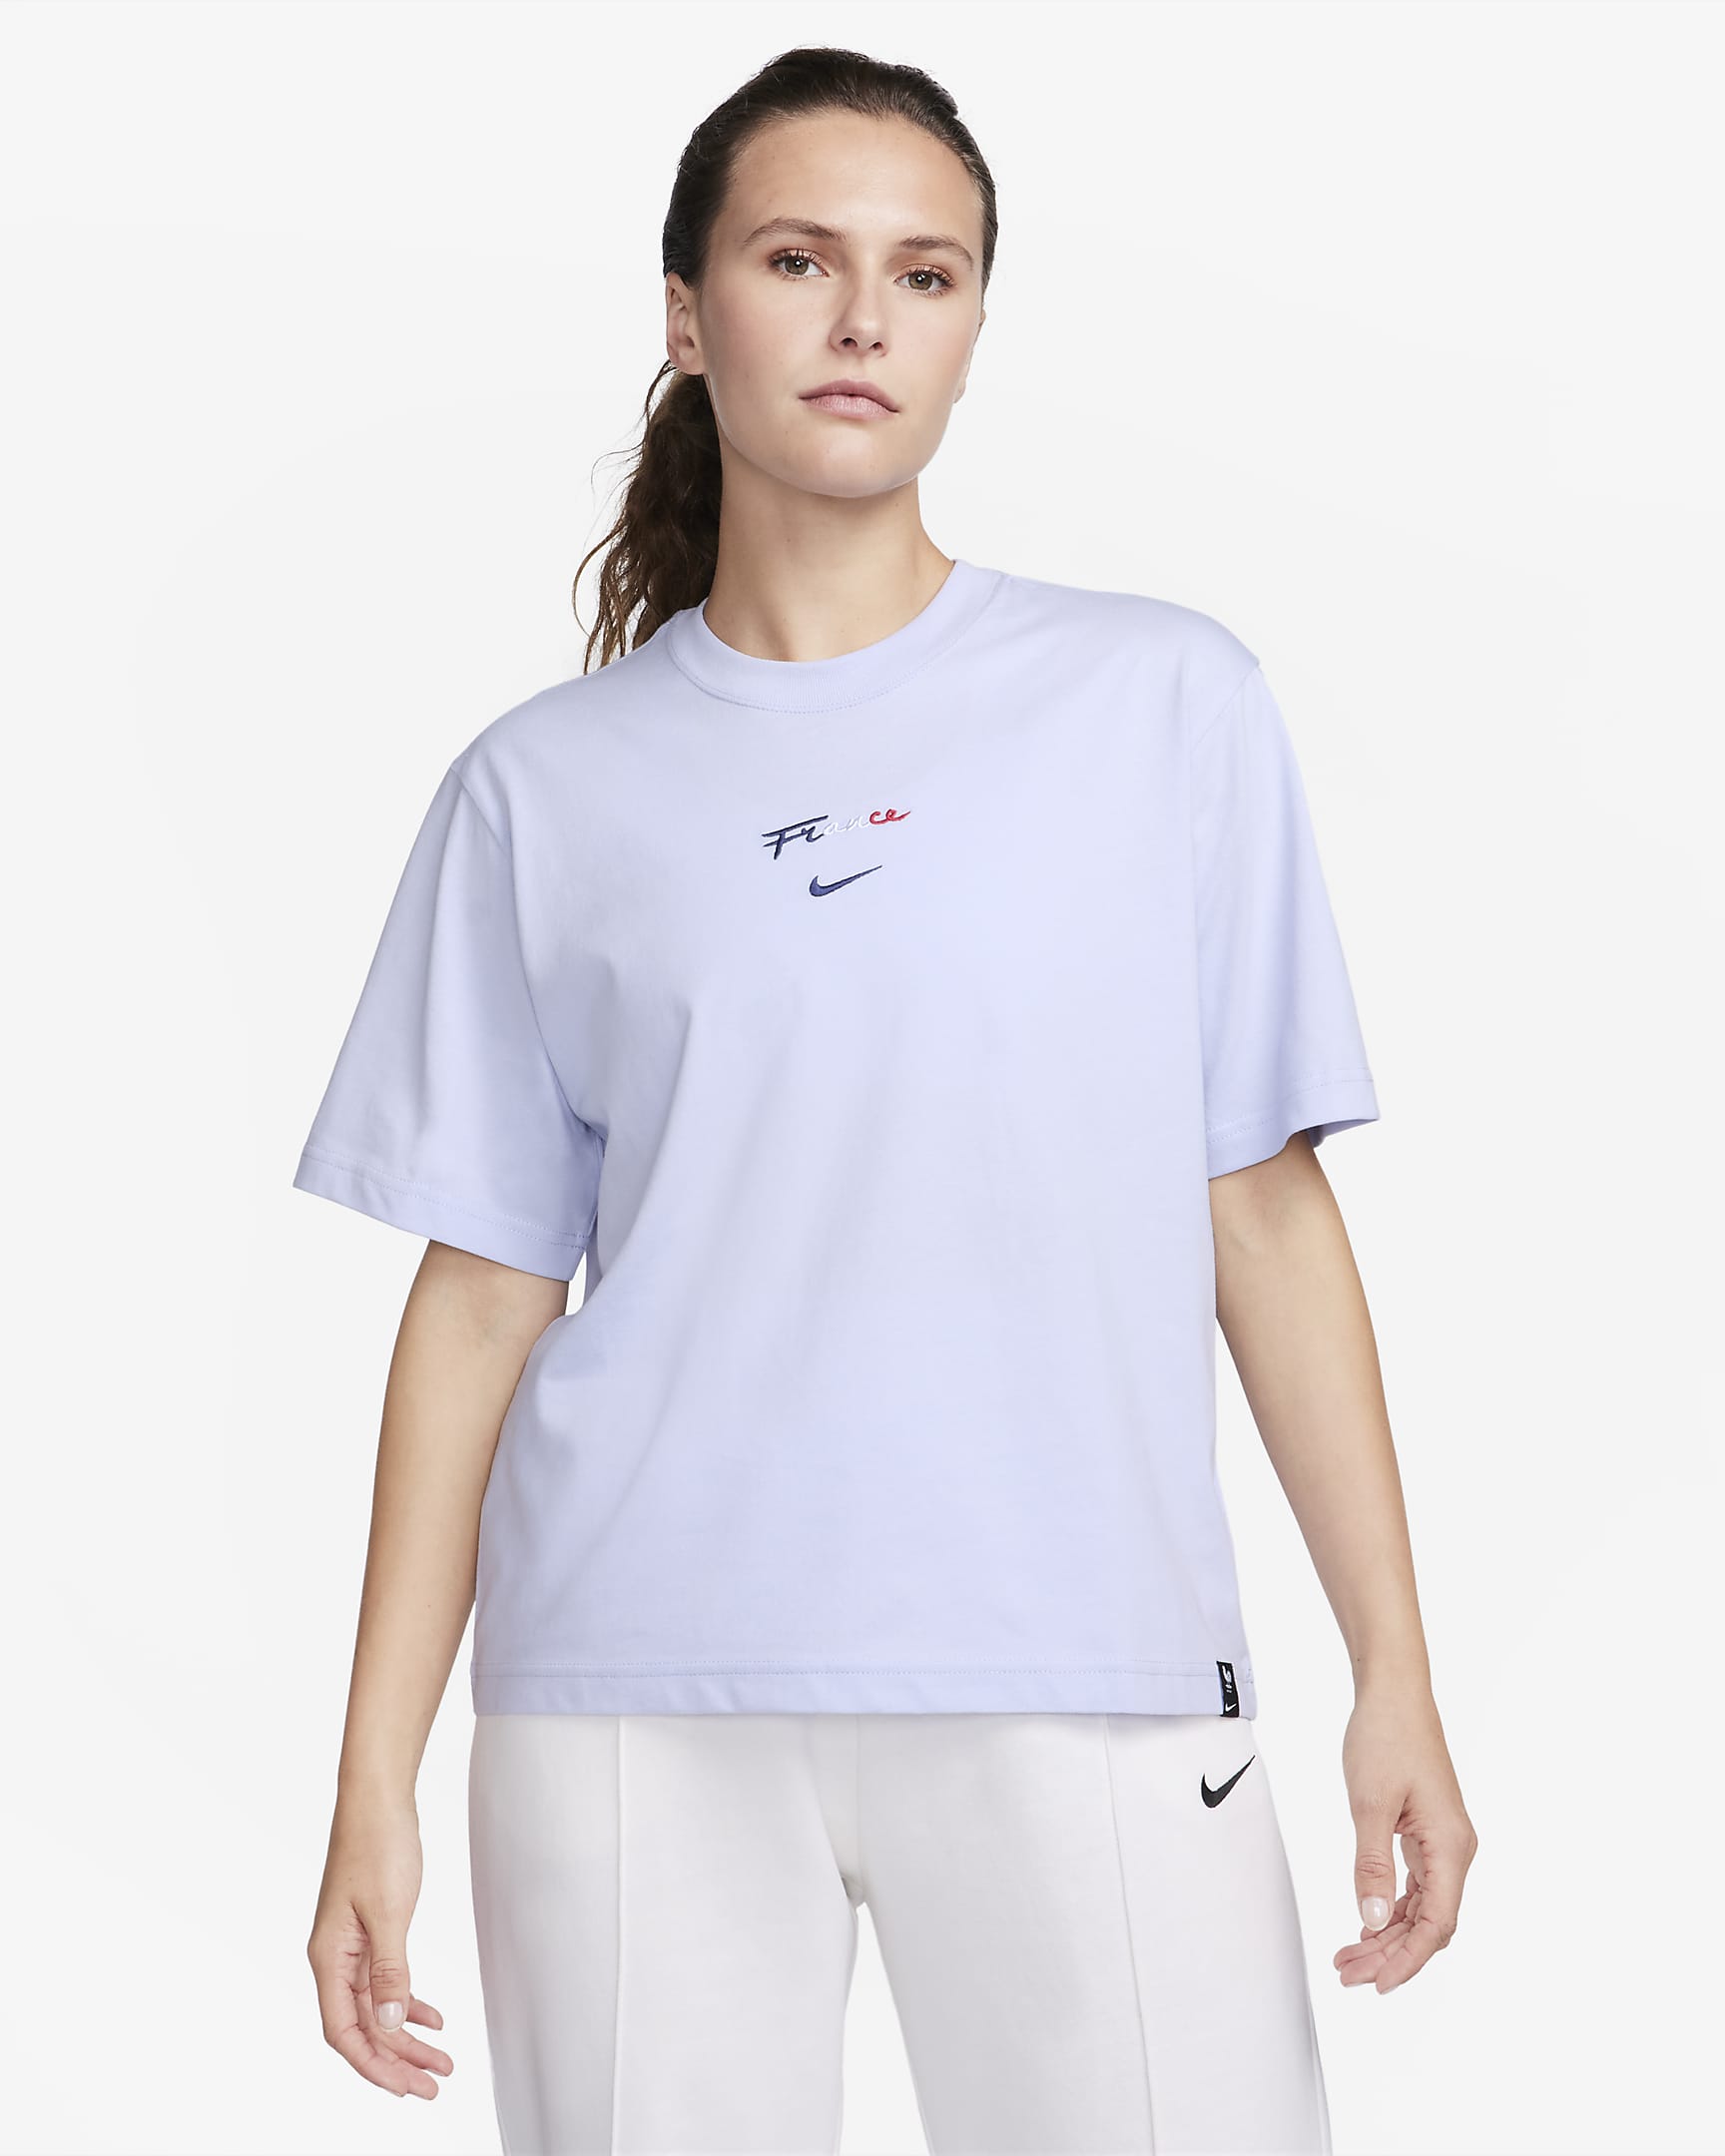 FFF Women's T-shirt. Nike RO